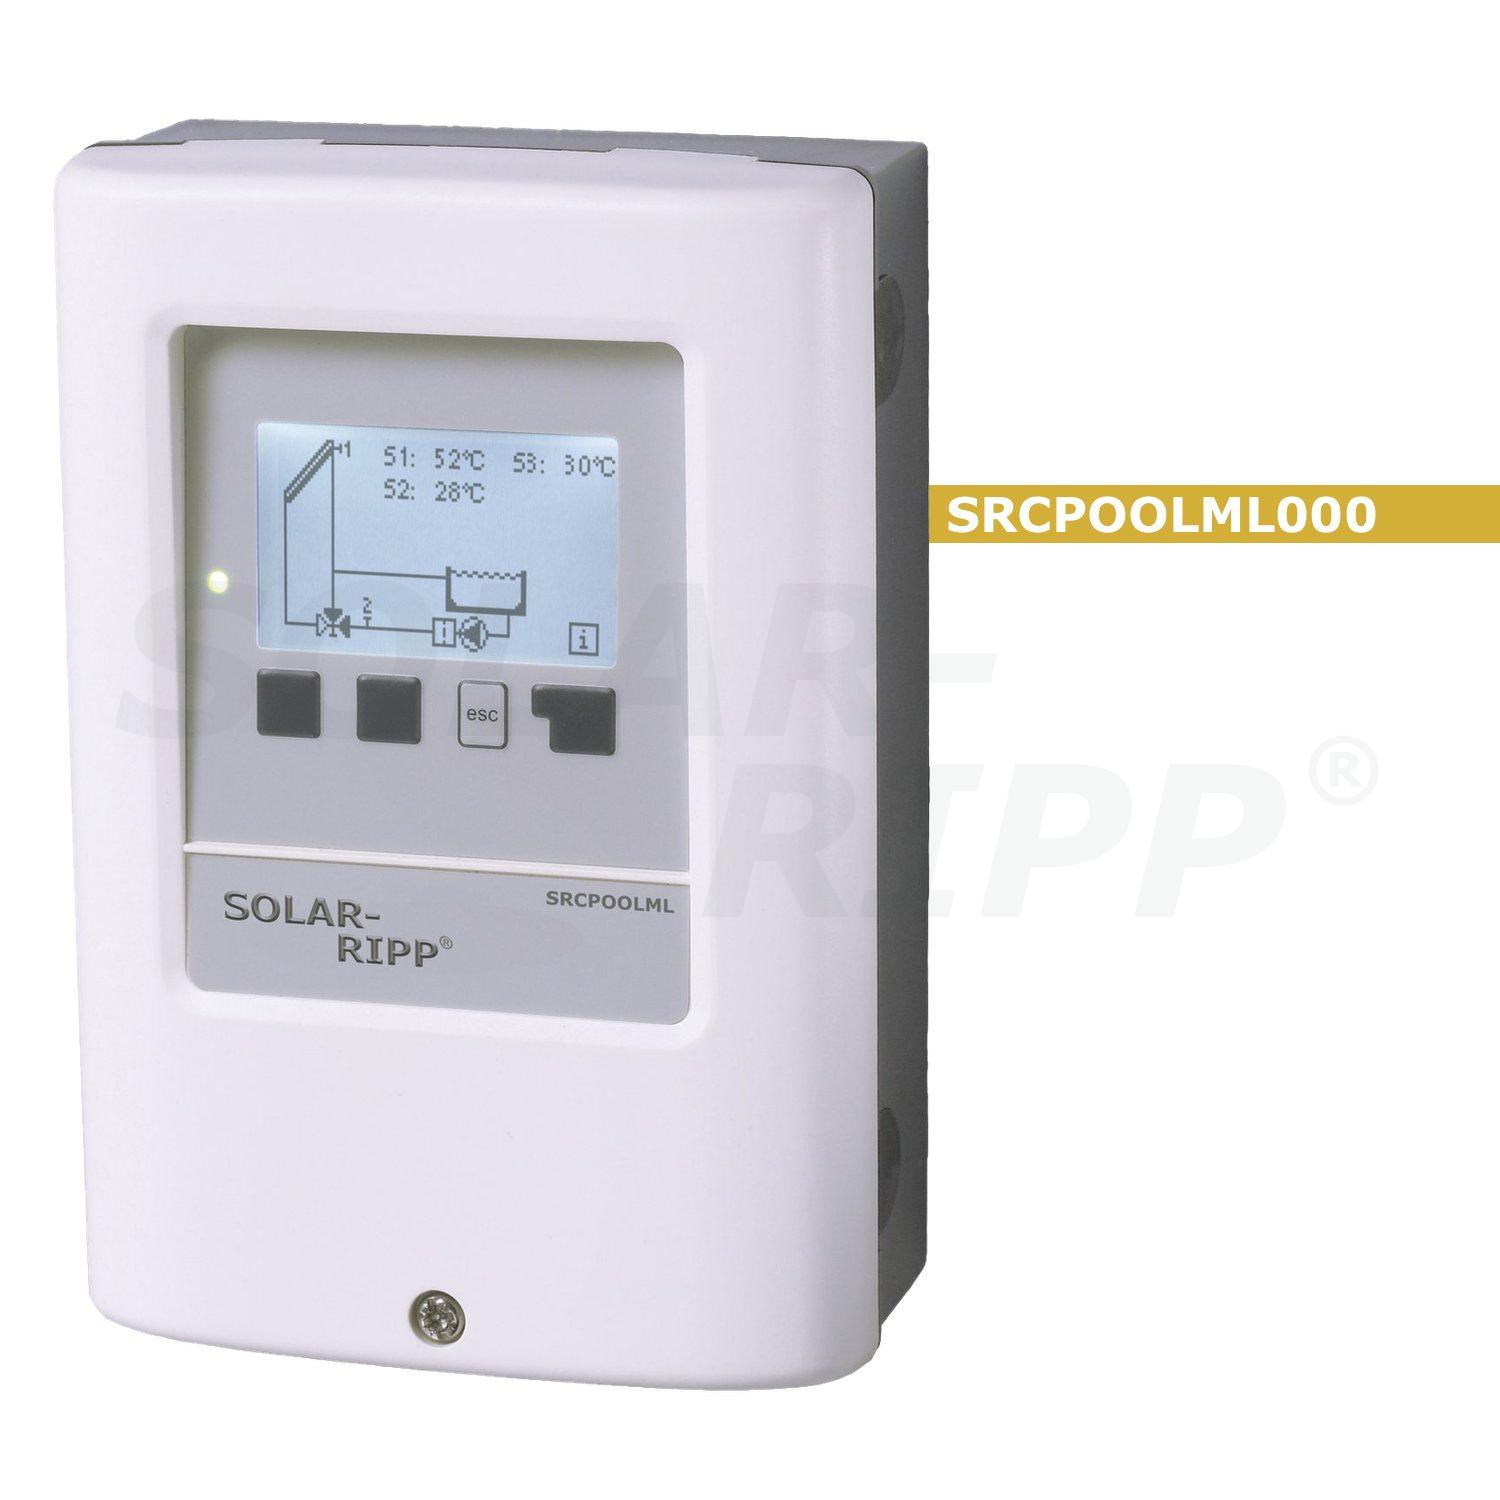 SOLAR-RIPP ® güneş kontrolörü SRCPOOLML000